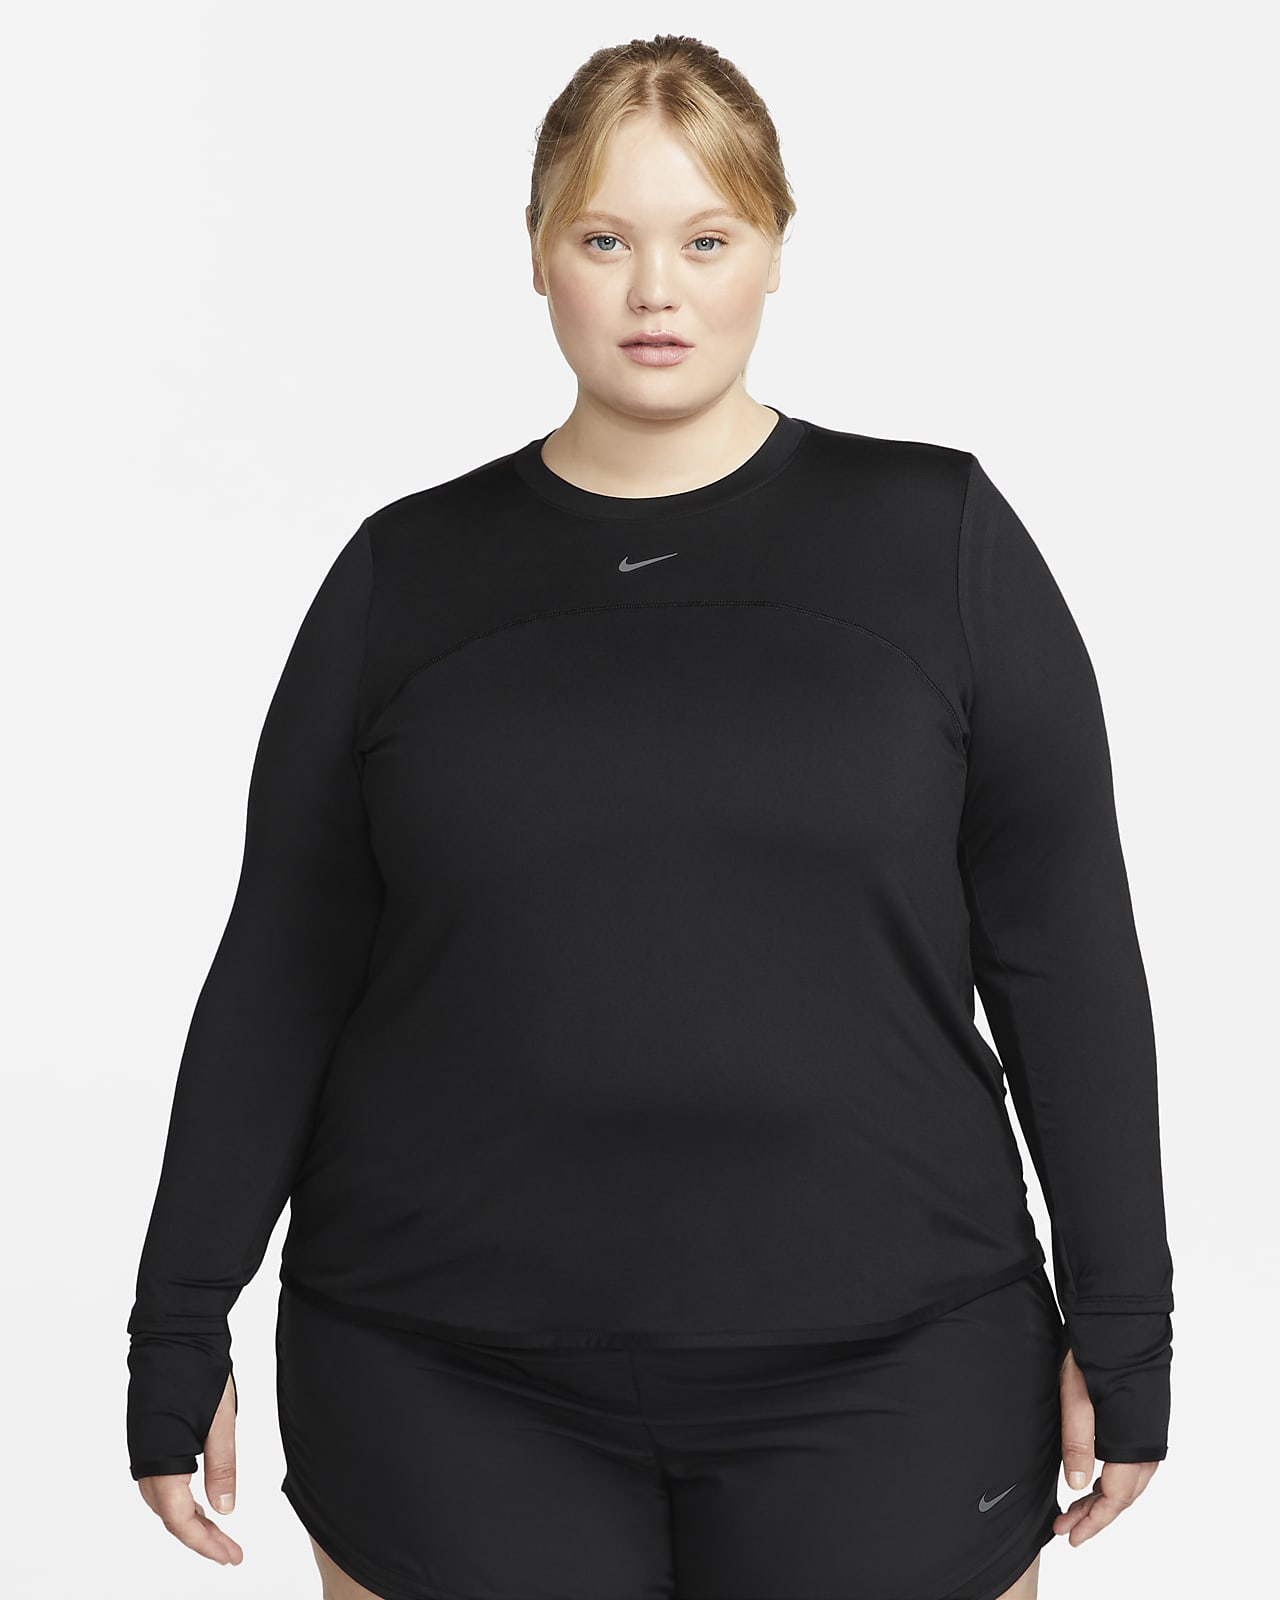 Damska koszulka do biegania z półokrągłym dekoltem (duże rozmiary) Nike Dri-FIT Swift Element UV